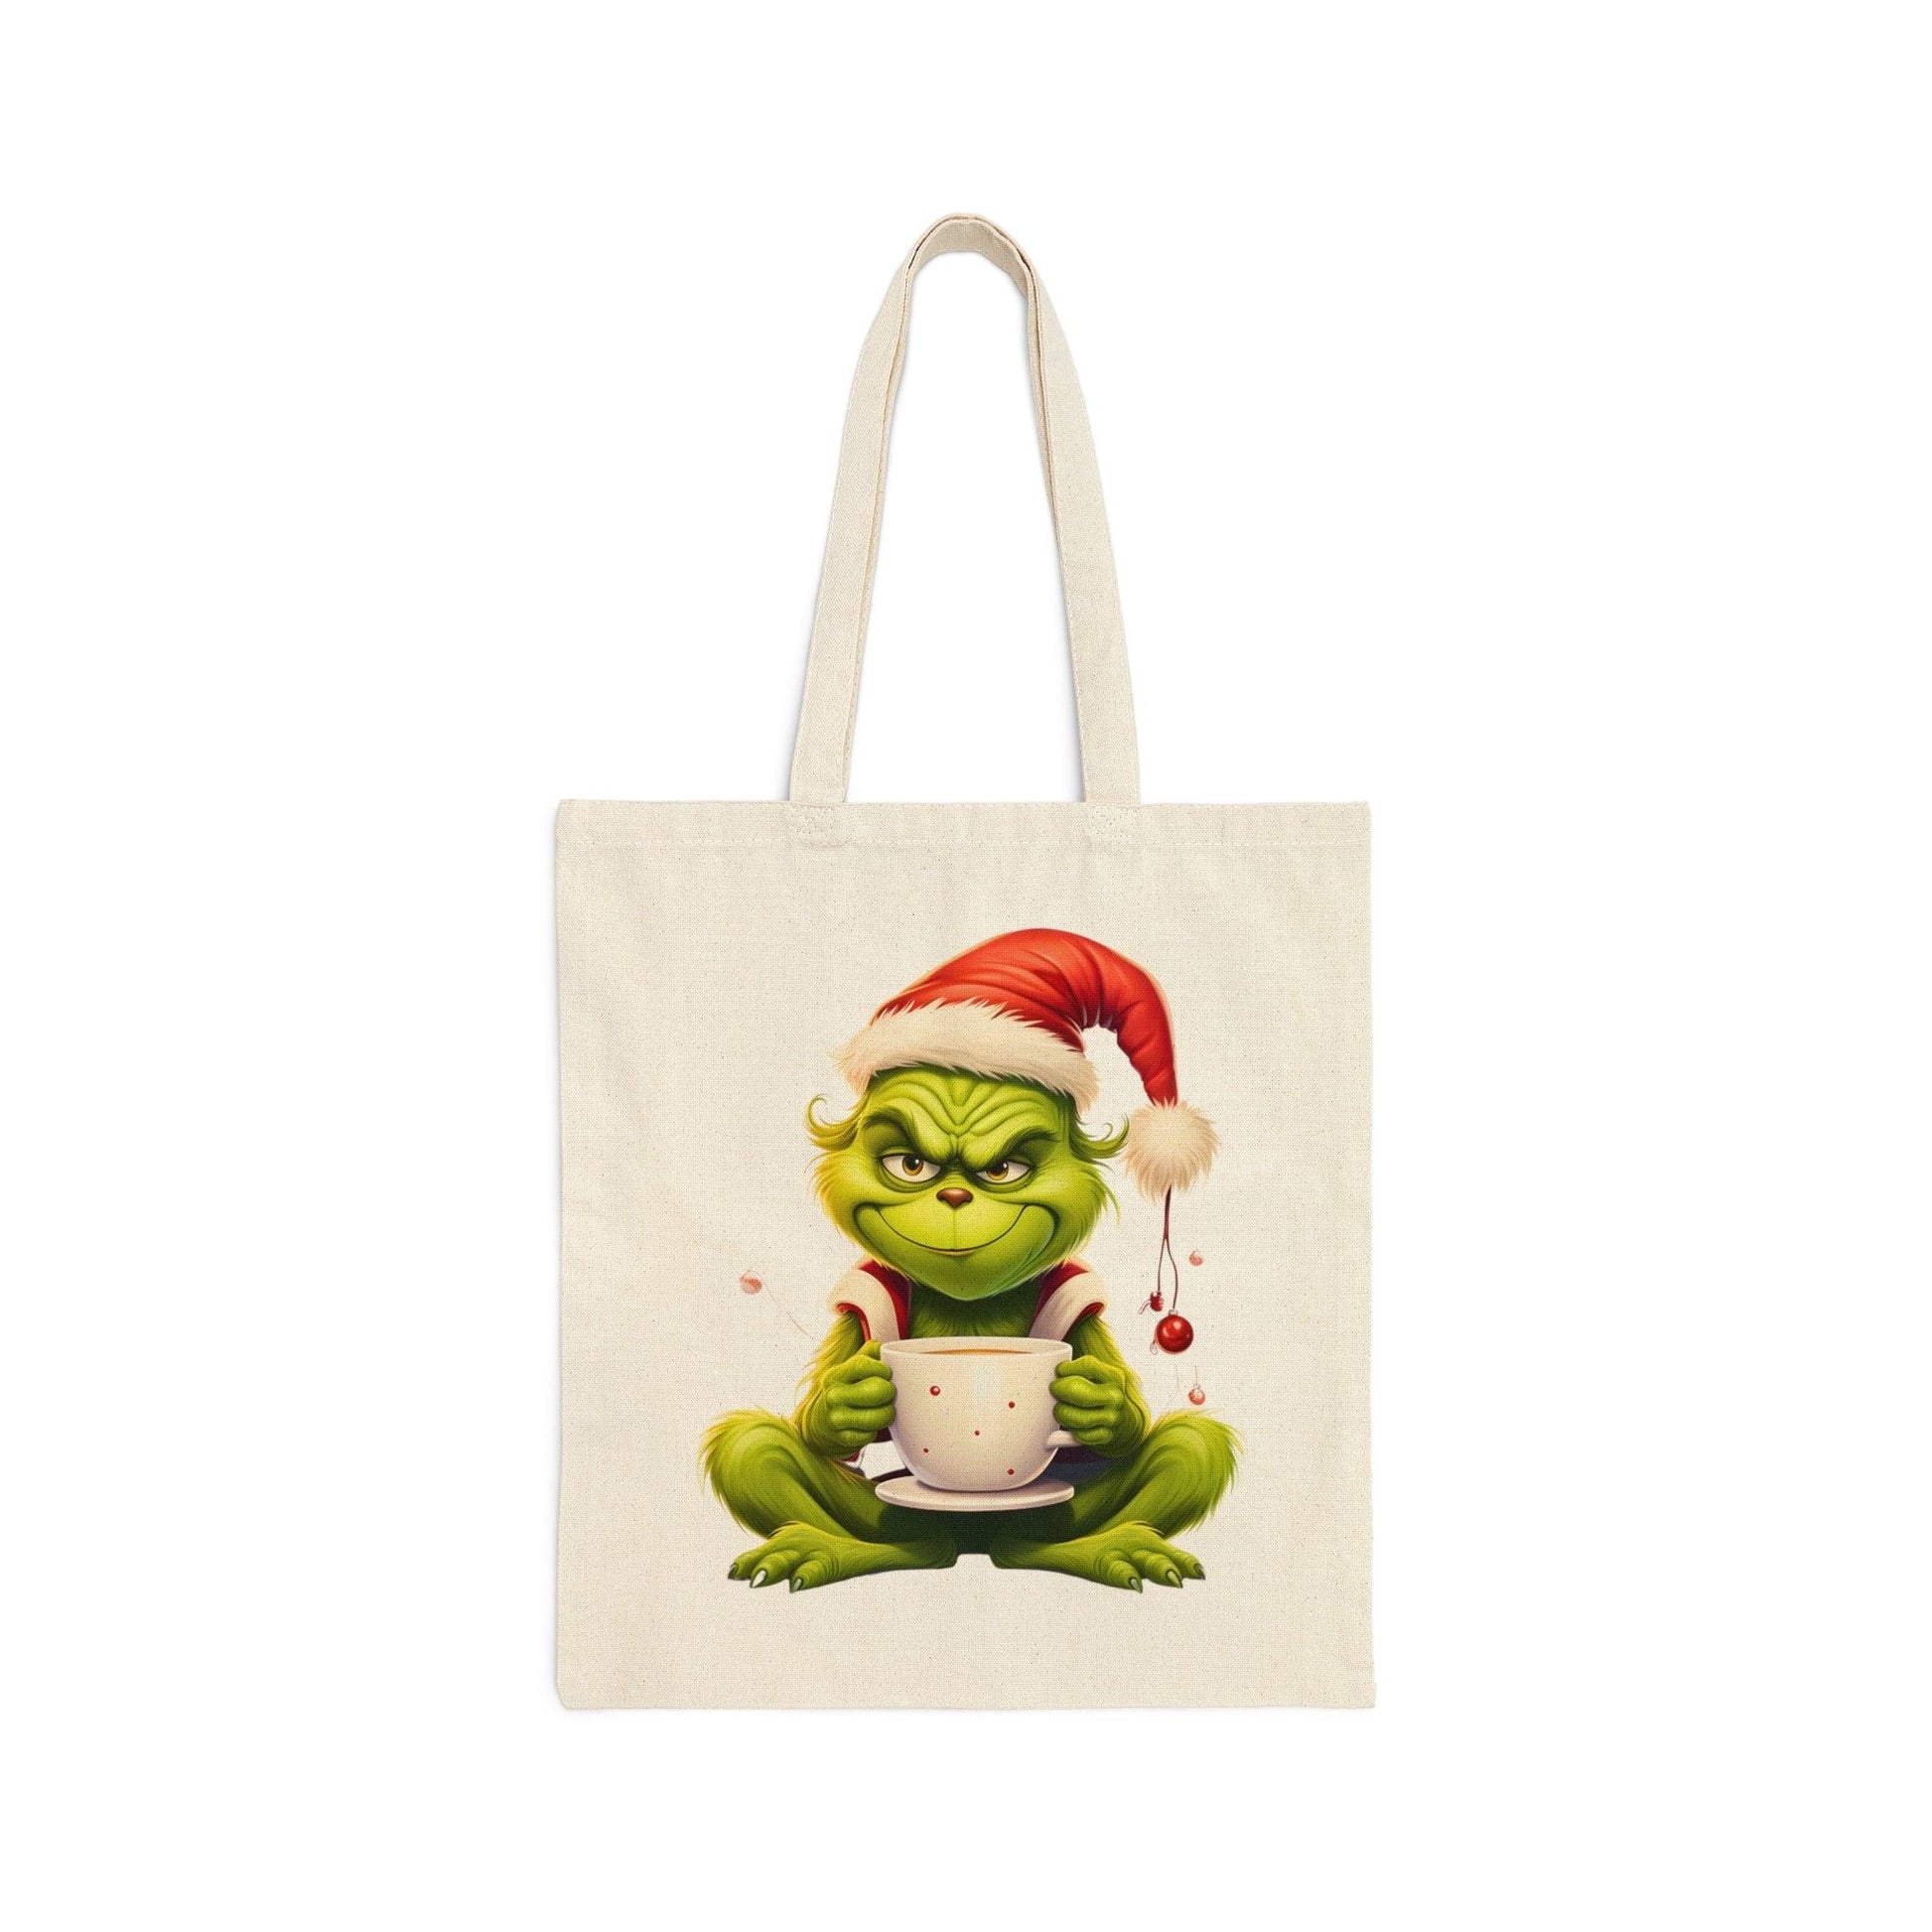 Grinch Tote Bag Christmas Bag Christmas Tote Bag The Grinch Bag Canvas Tote Bag Shopping Bag Gift For Women Totes Birthday Gift Bag - Giftsmojo